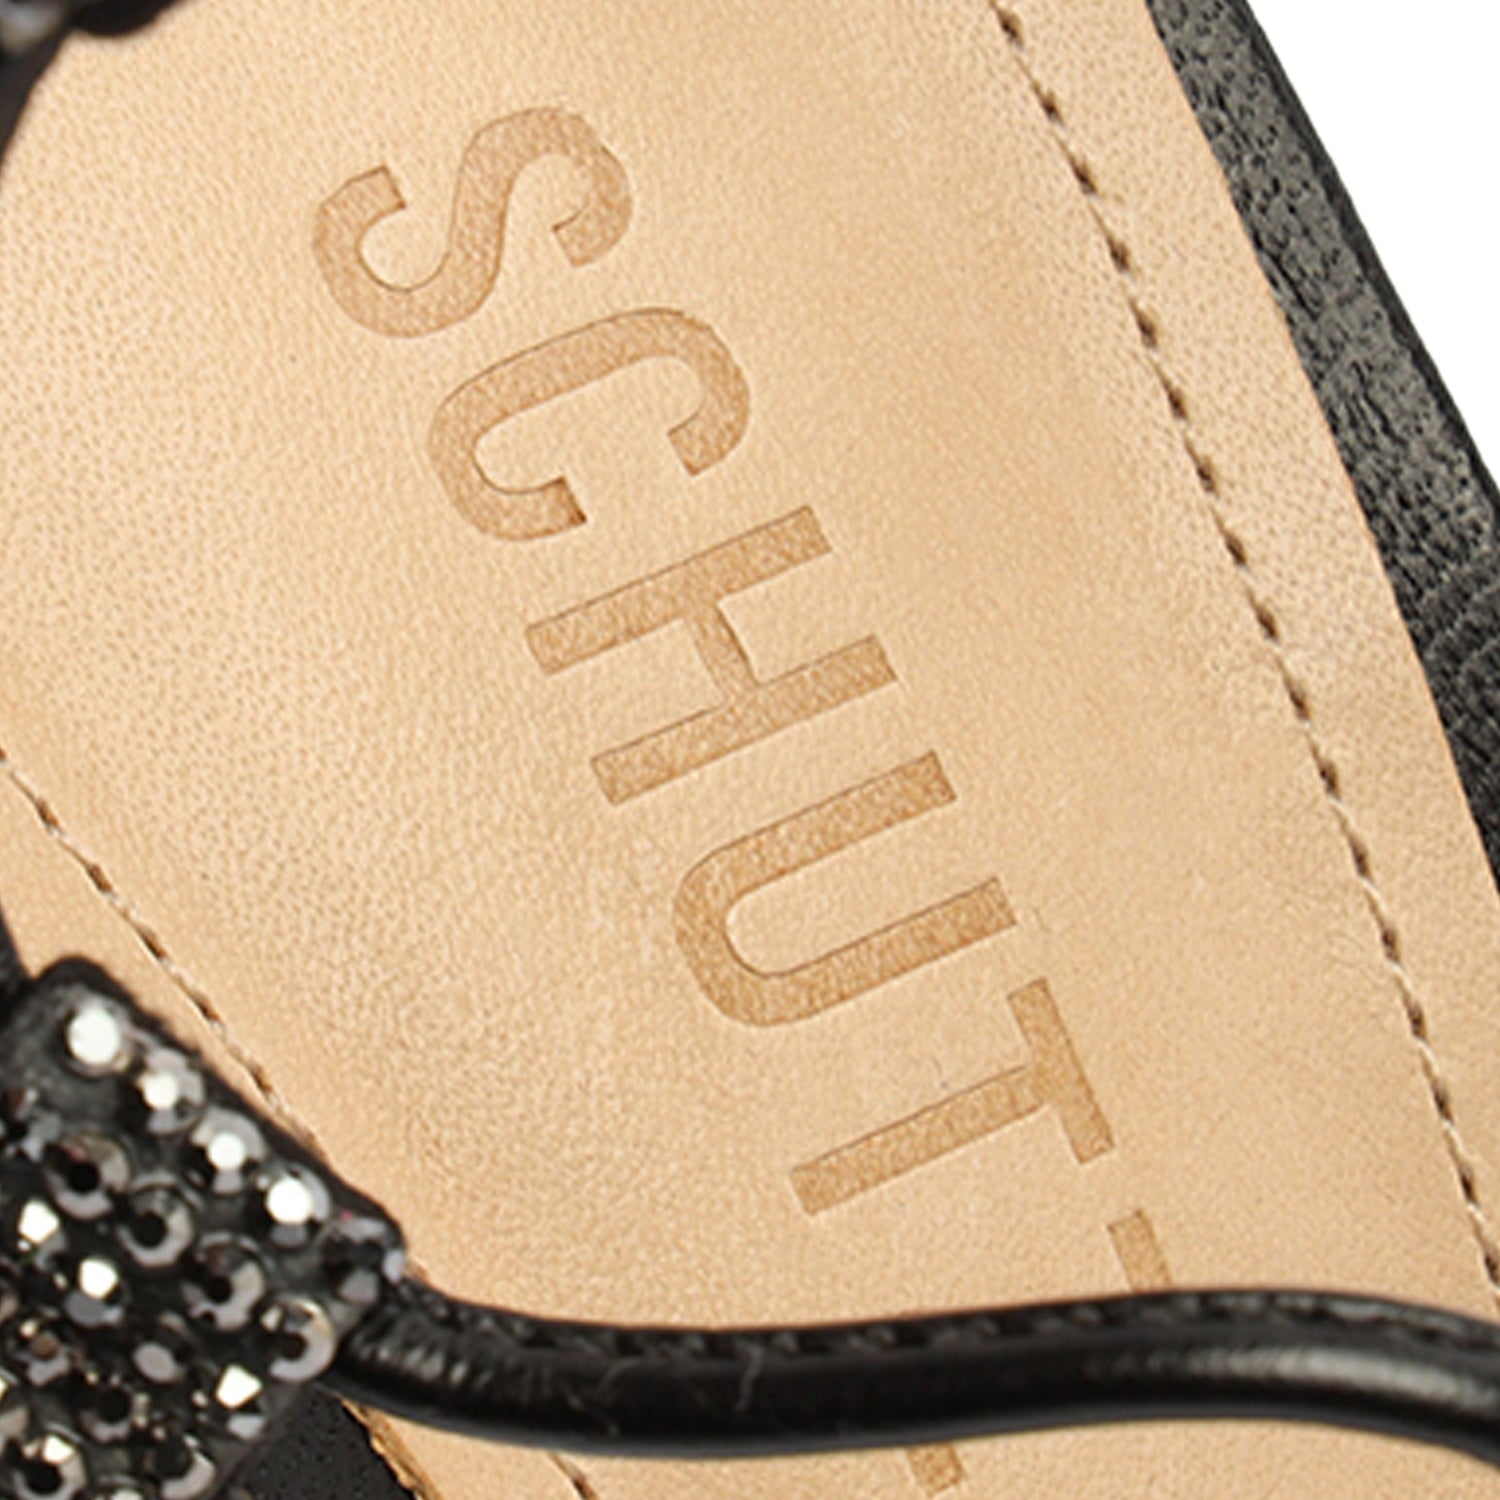 Kallie Nappa Leather Sandal Sandals Sale    - Schutz Shoes